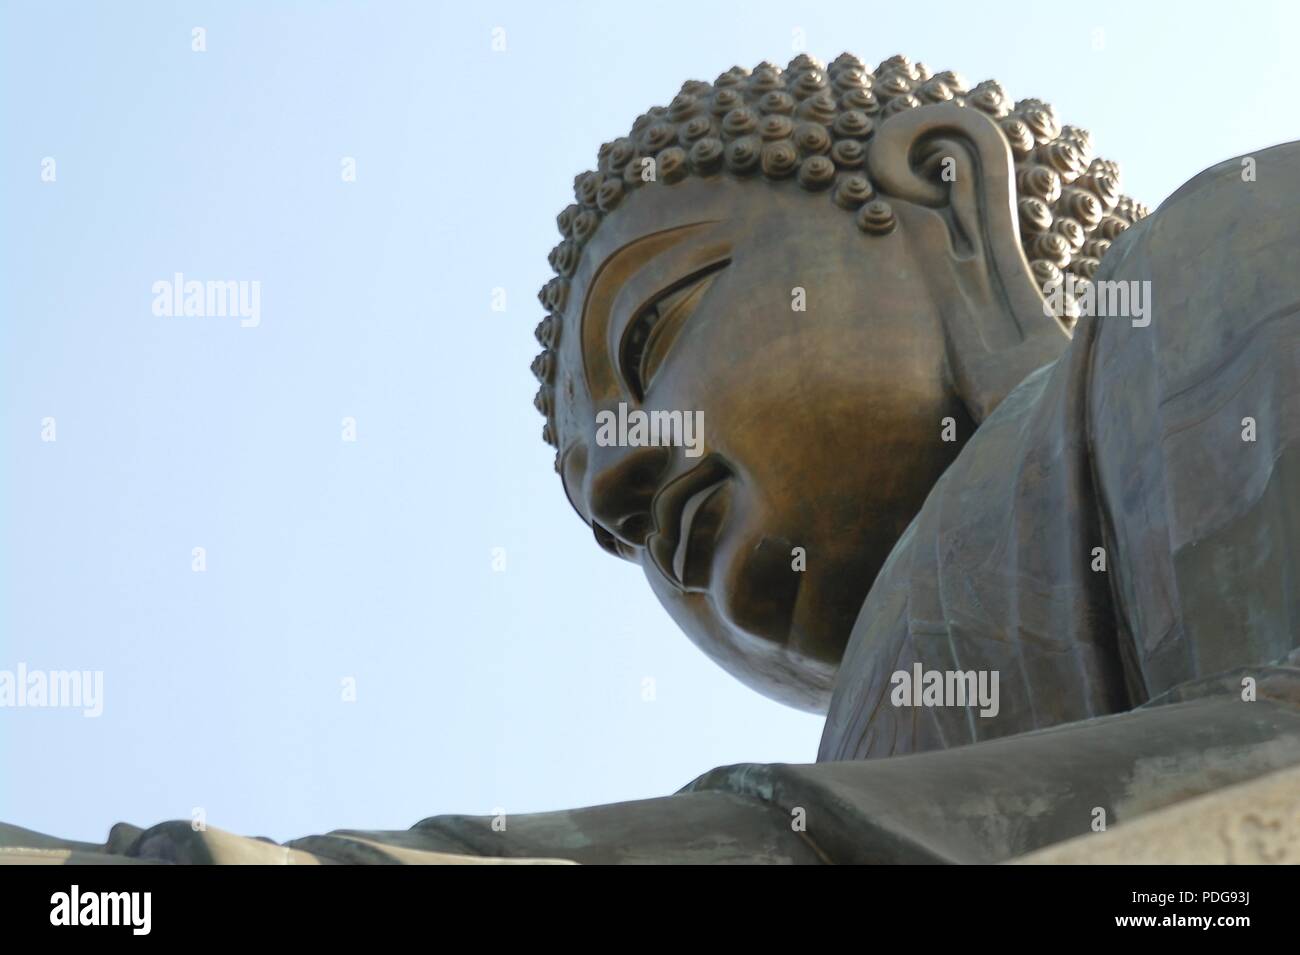 Big buddha statue, Tian Tan Buddha in Hong Kong, China Stock Photo